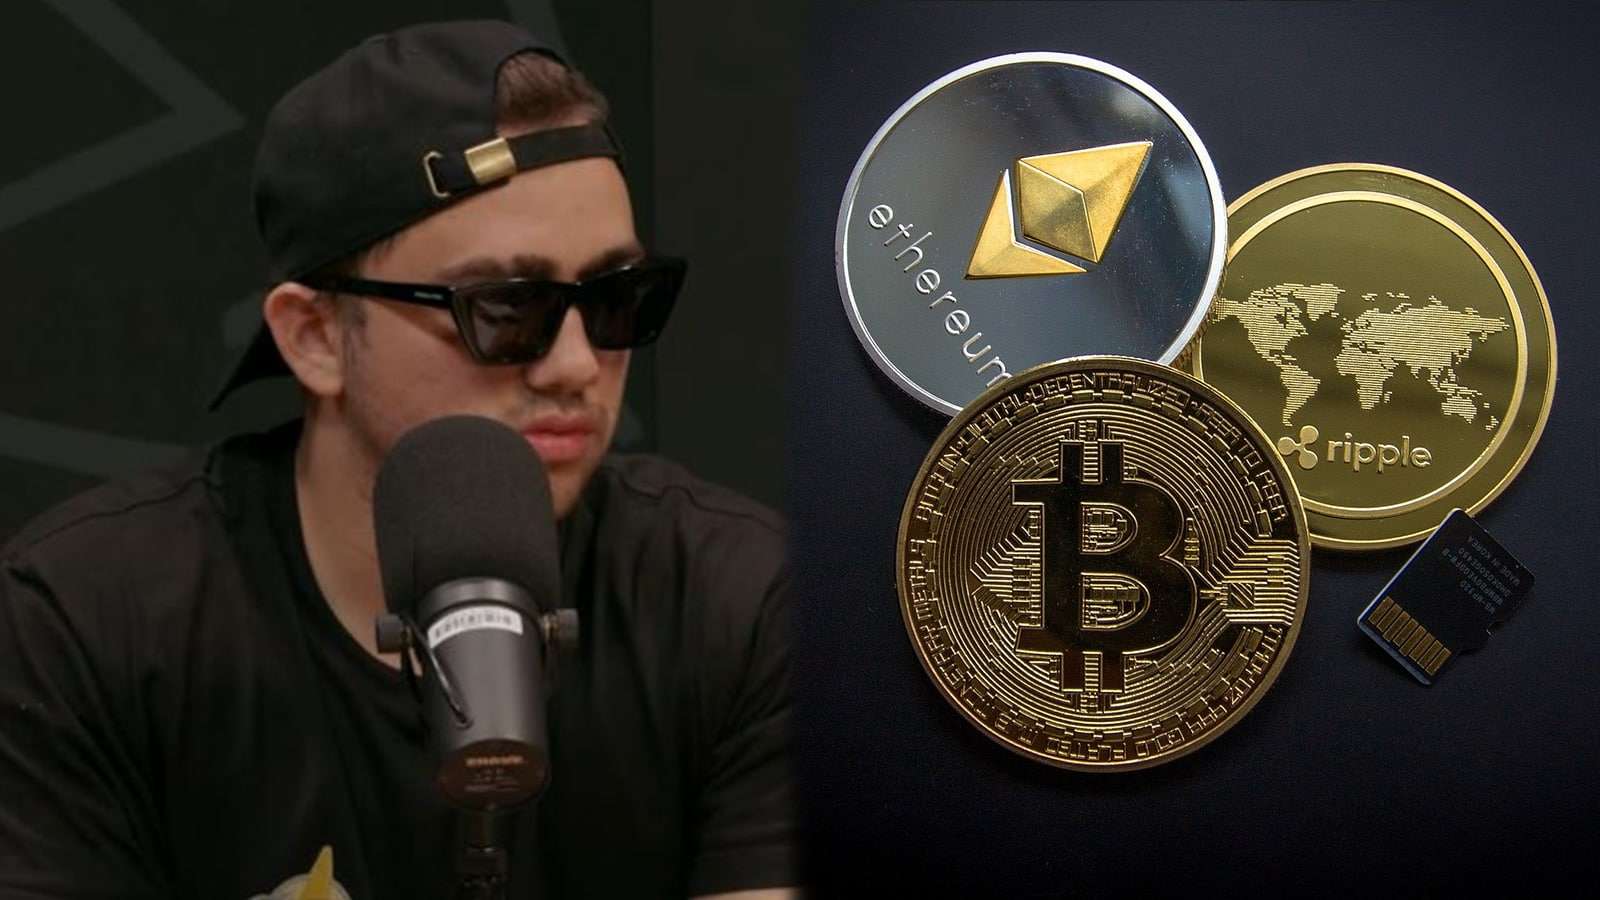 Mizkif next to Bitcoin